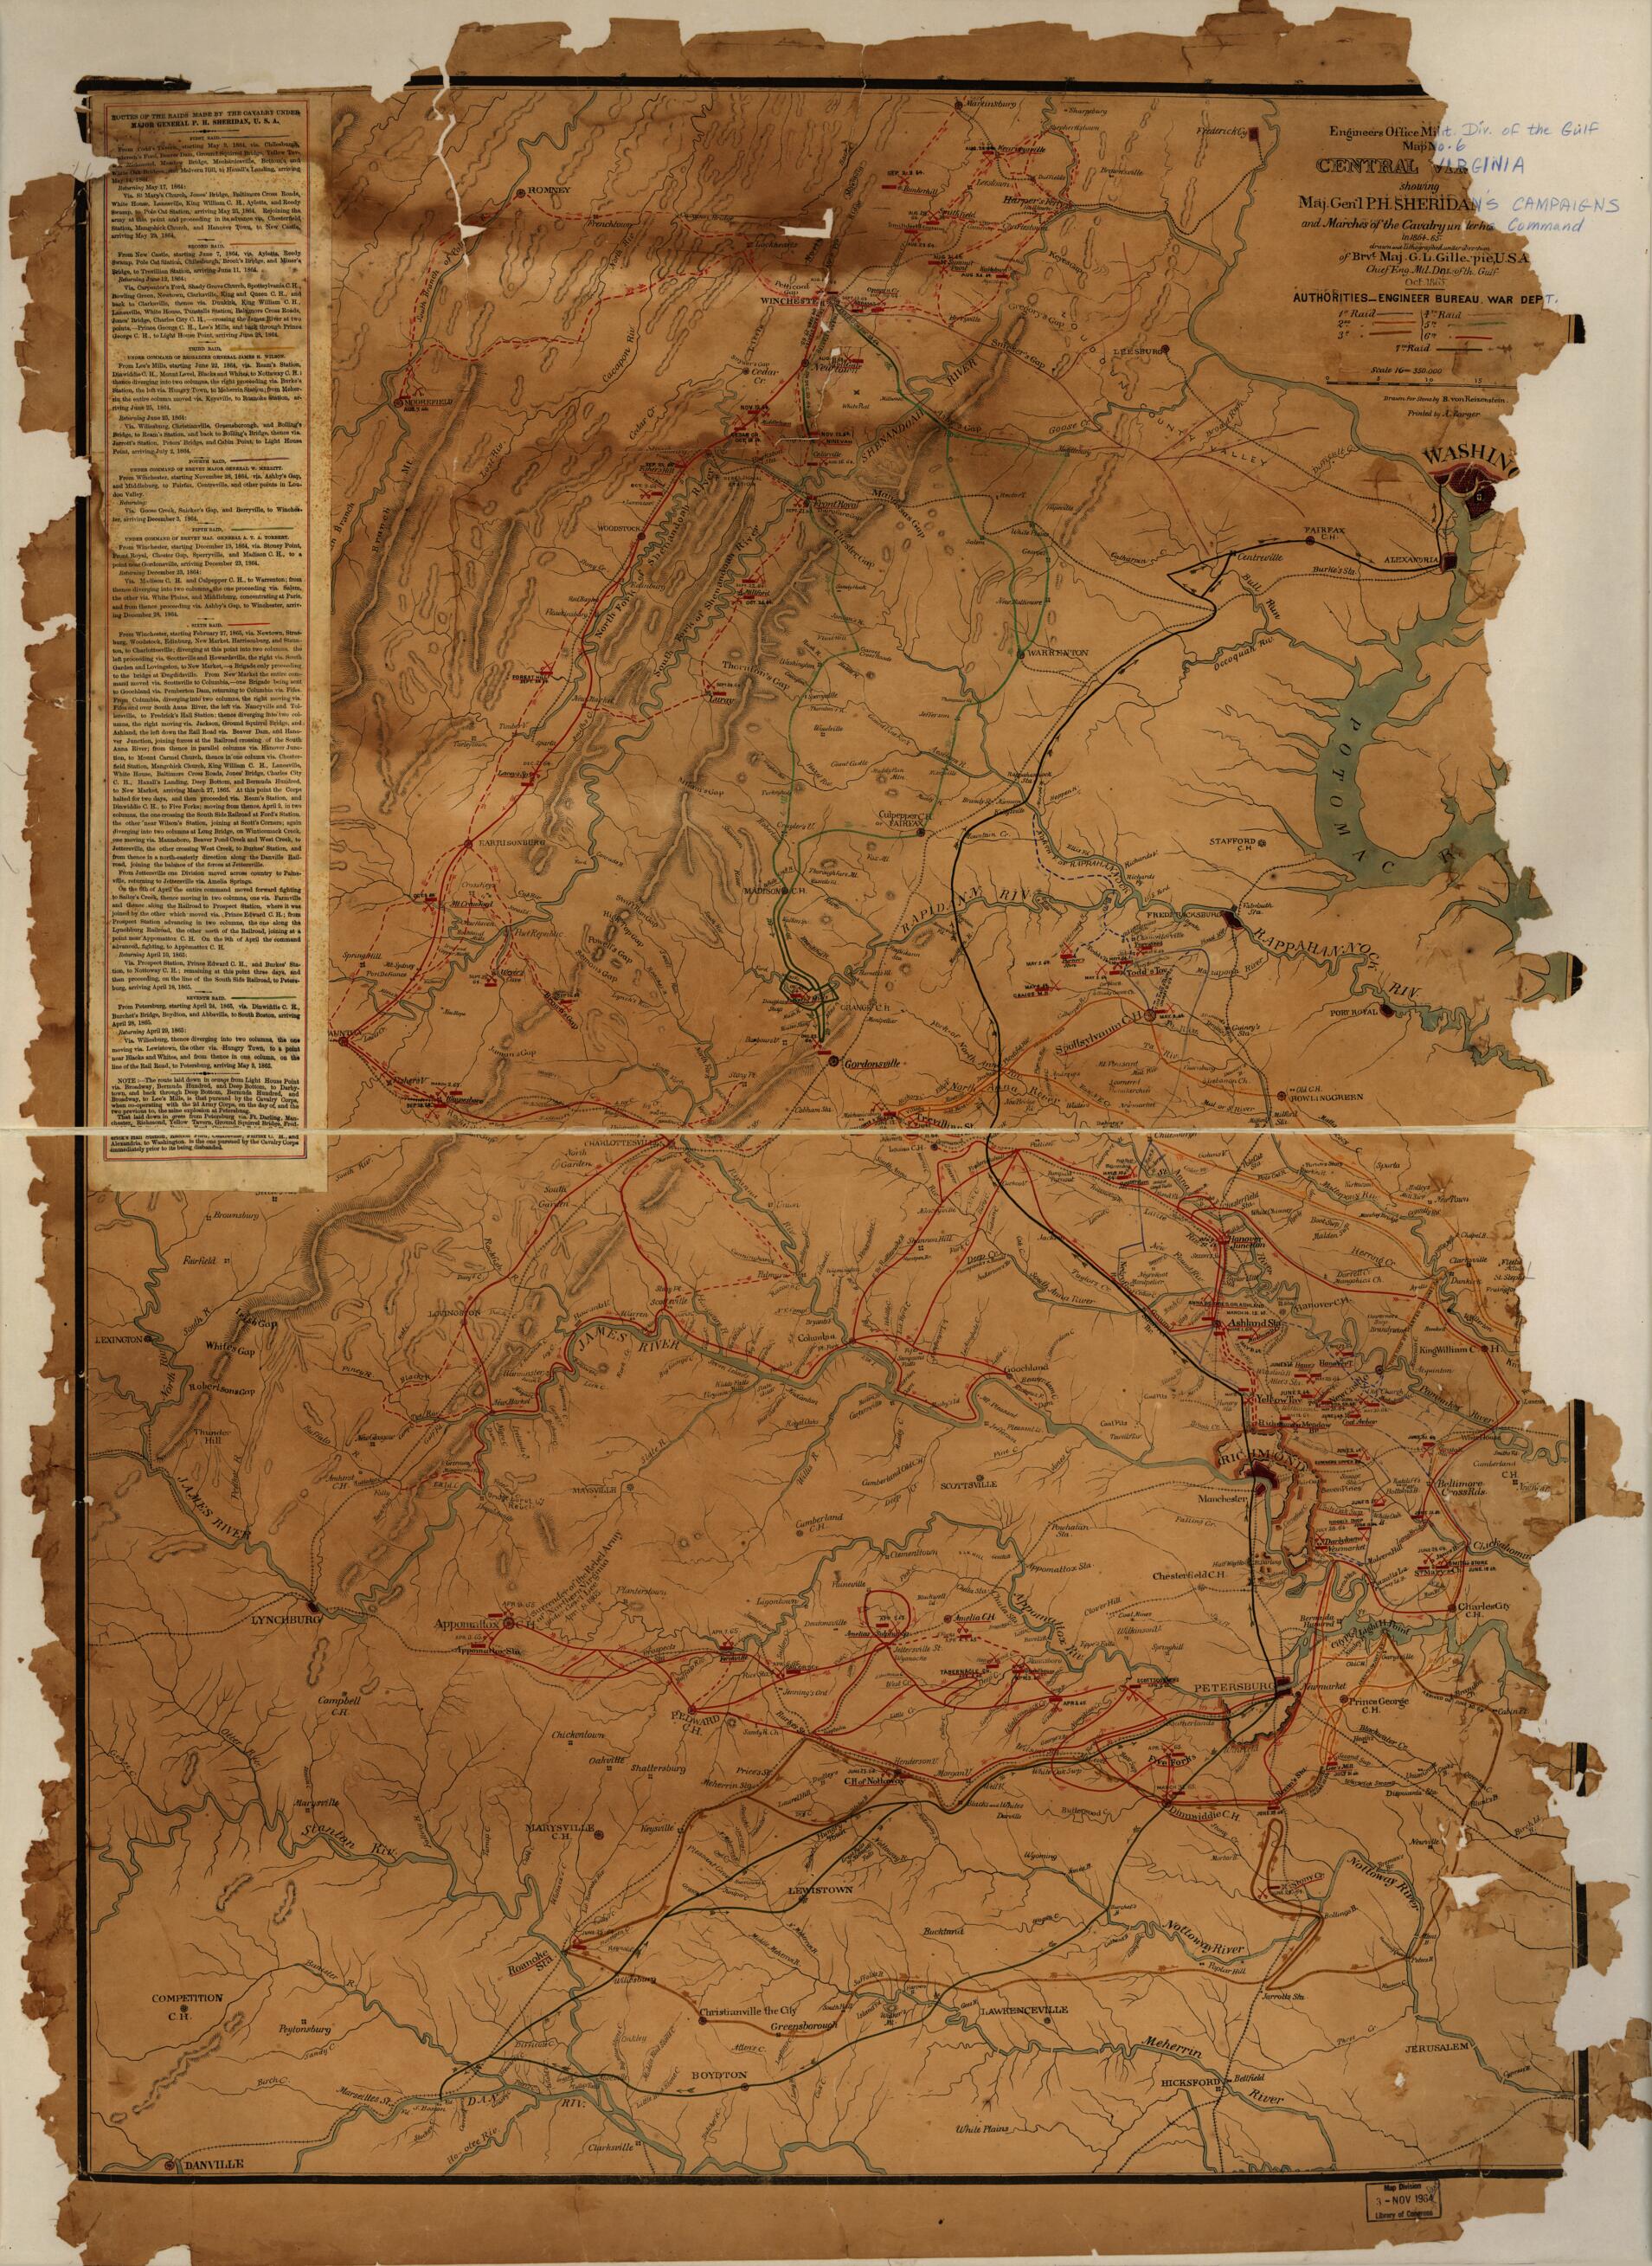 This old map of 65 from 1865 was created by G. L. Gillespie, B. Von Reizenstein in 1865